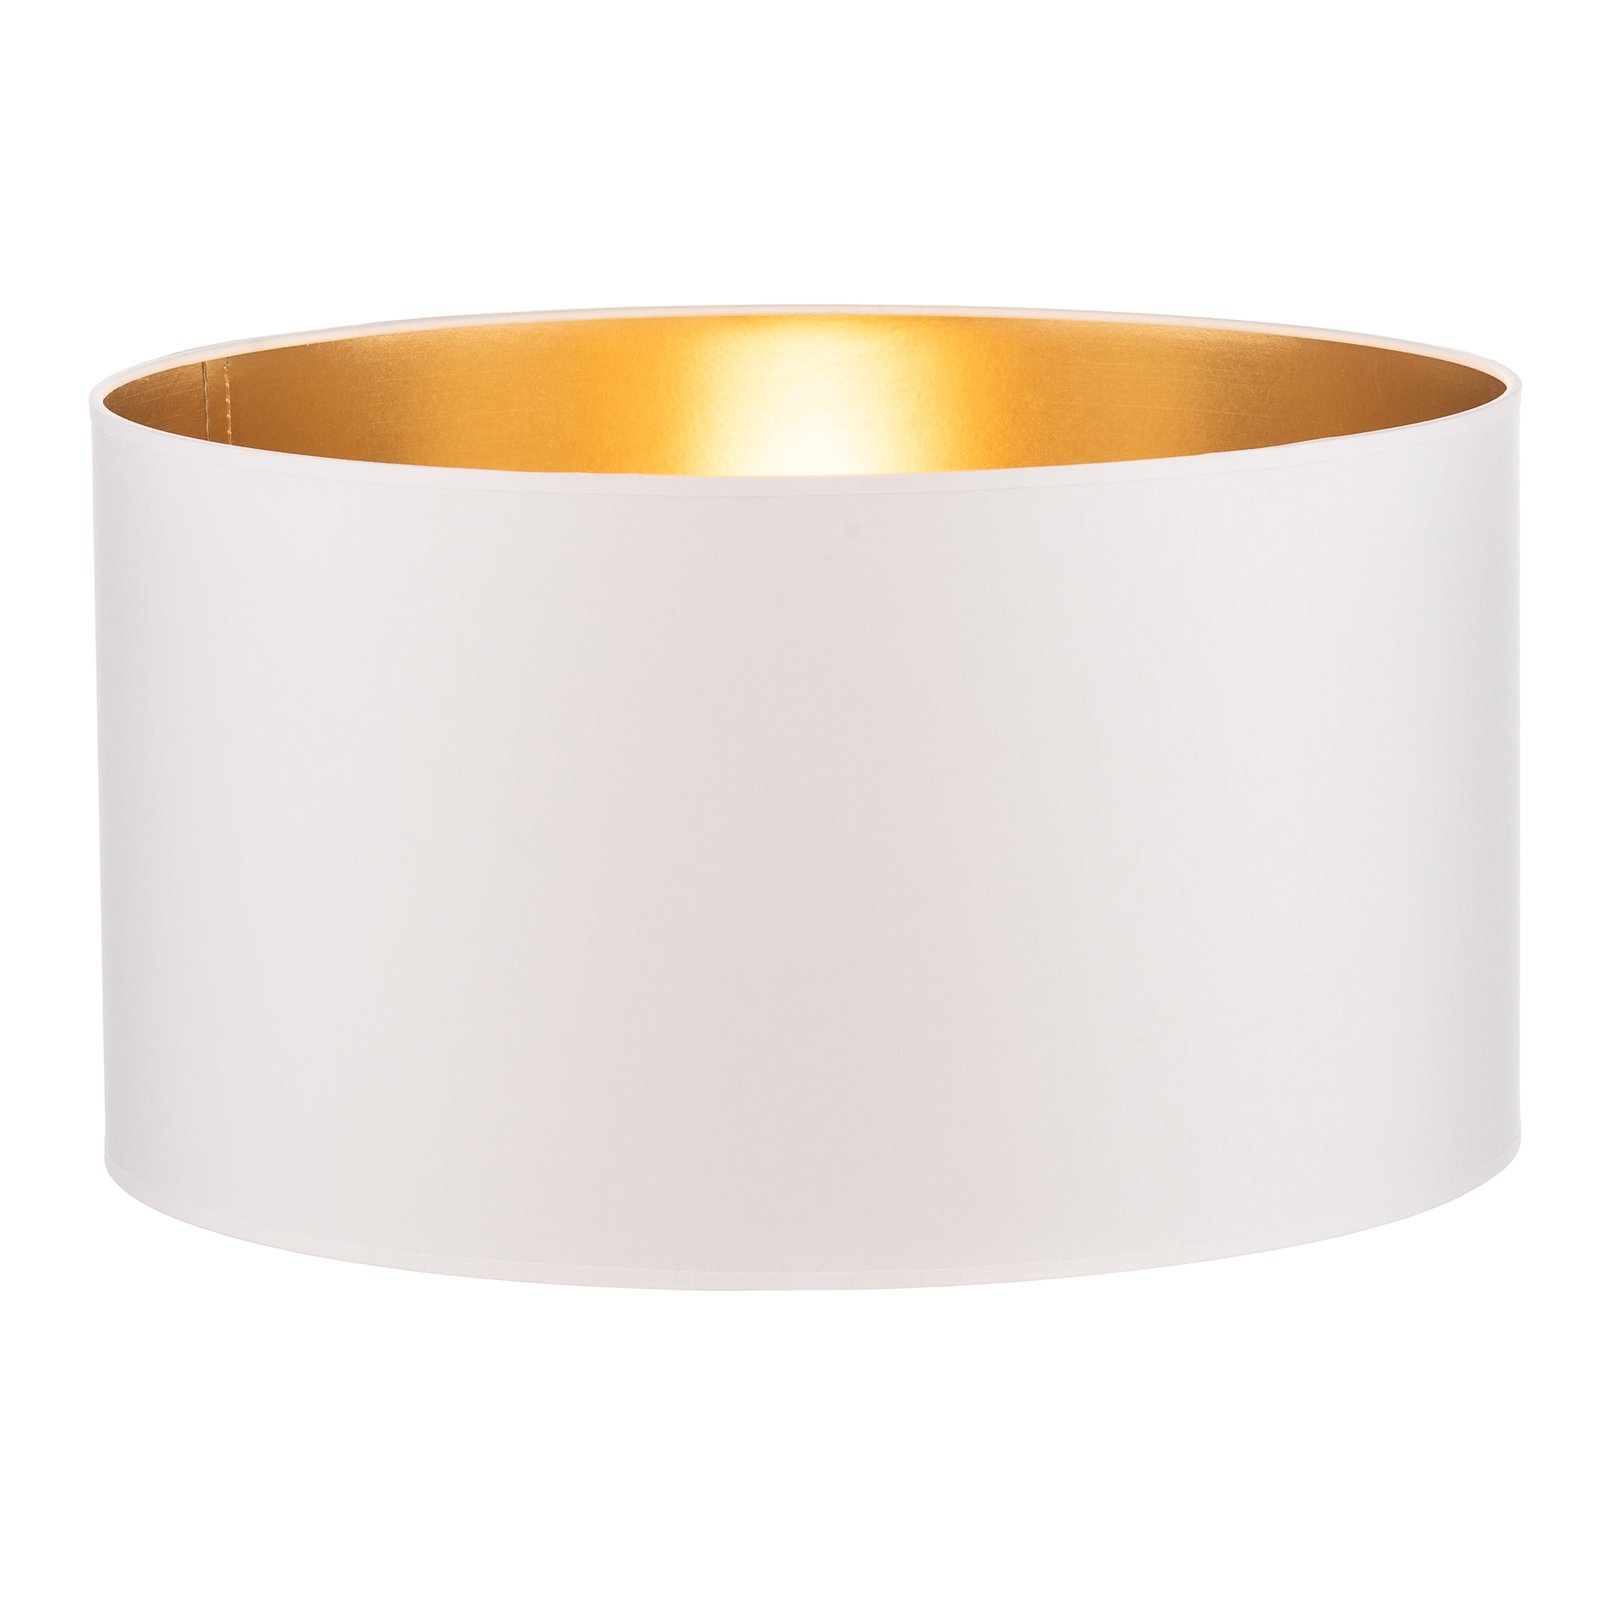 Lampskärm Alba, Ø 45 cm, E27, vit/guld